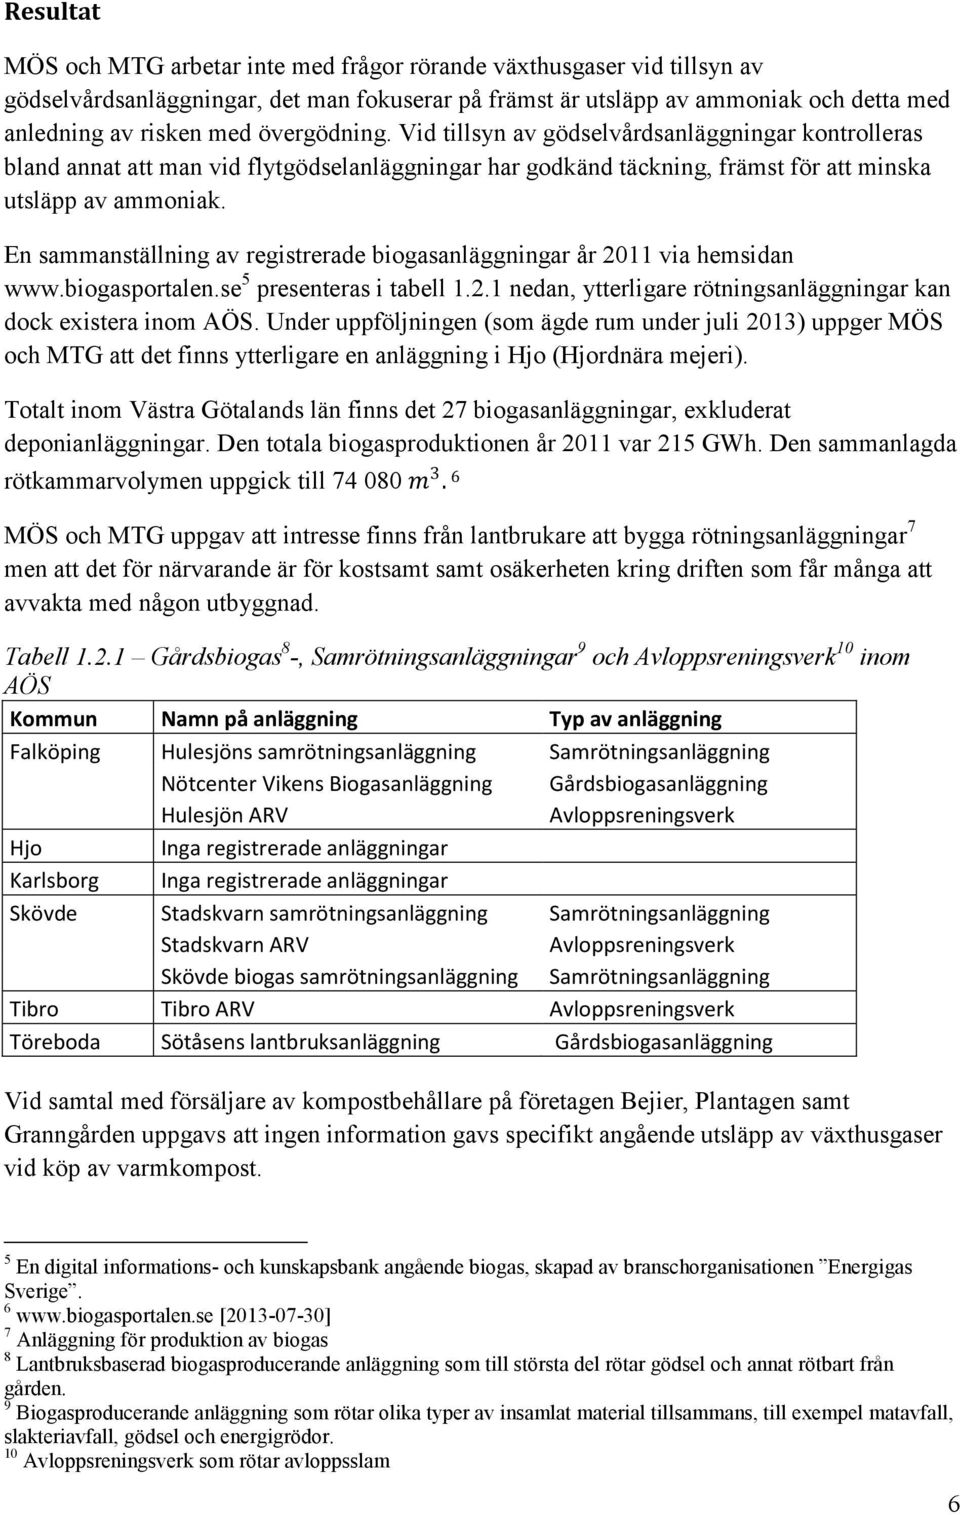 En sammanställning av registrerade biogasanläggningar år 2011 via hemsidan www.biogasportalen.se 5 presenteras i tabell 1.2.1 nedan, ytterligare rötningsanläggningar kan dock existera inom AÖS.